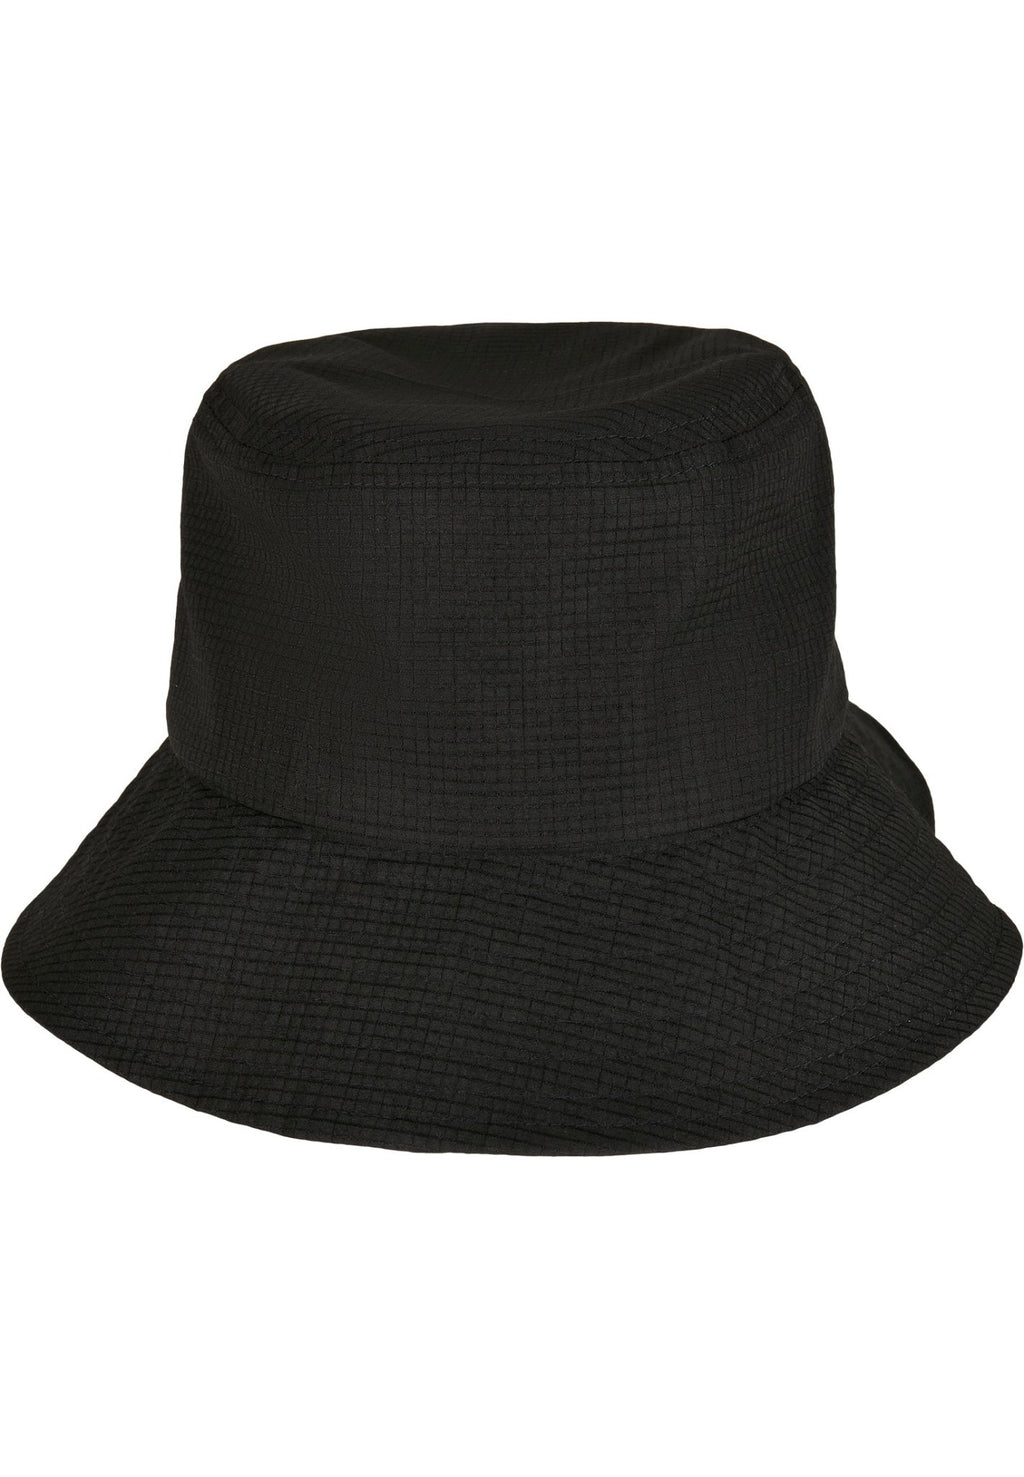 Nastaviteľný klobúk Flexfit Bucket Hat - čierny